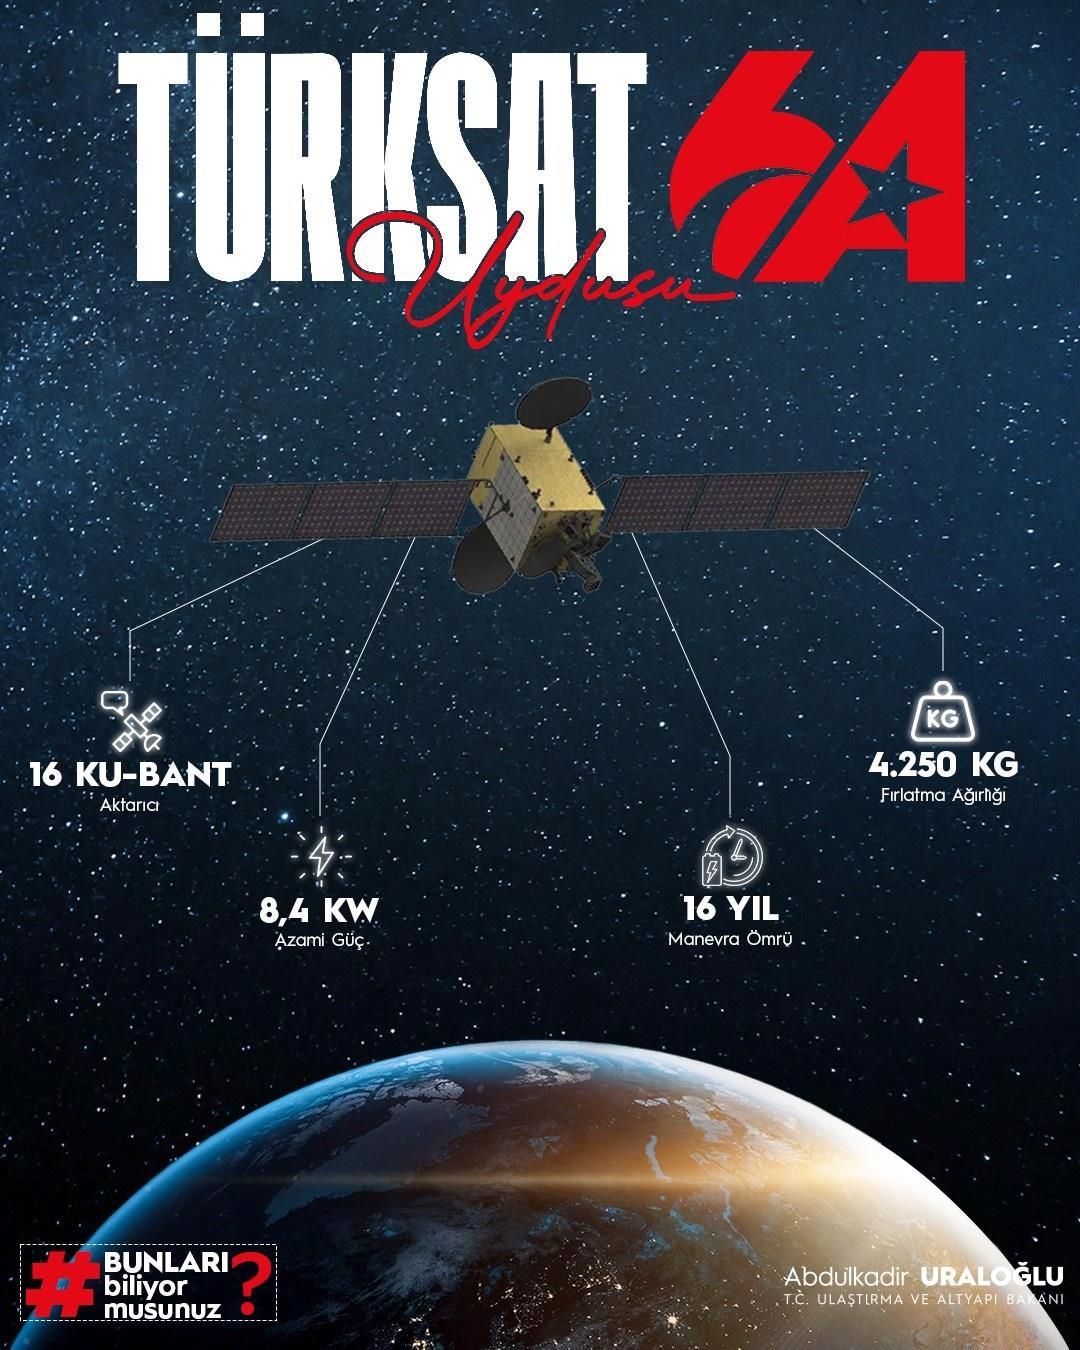 Haziran ayında fırlatılacak Türksat 6A için özel logo tasarlandı